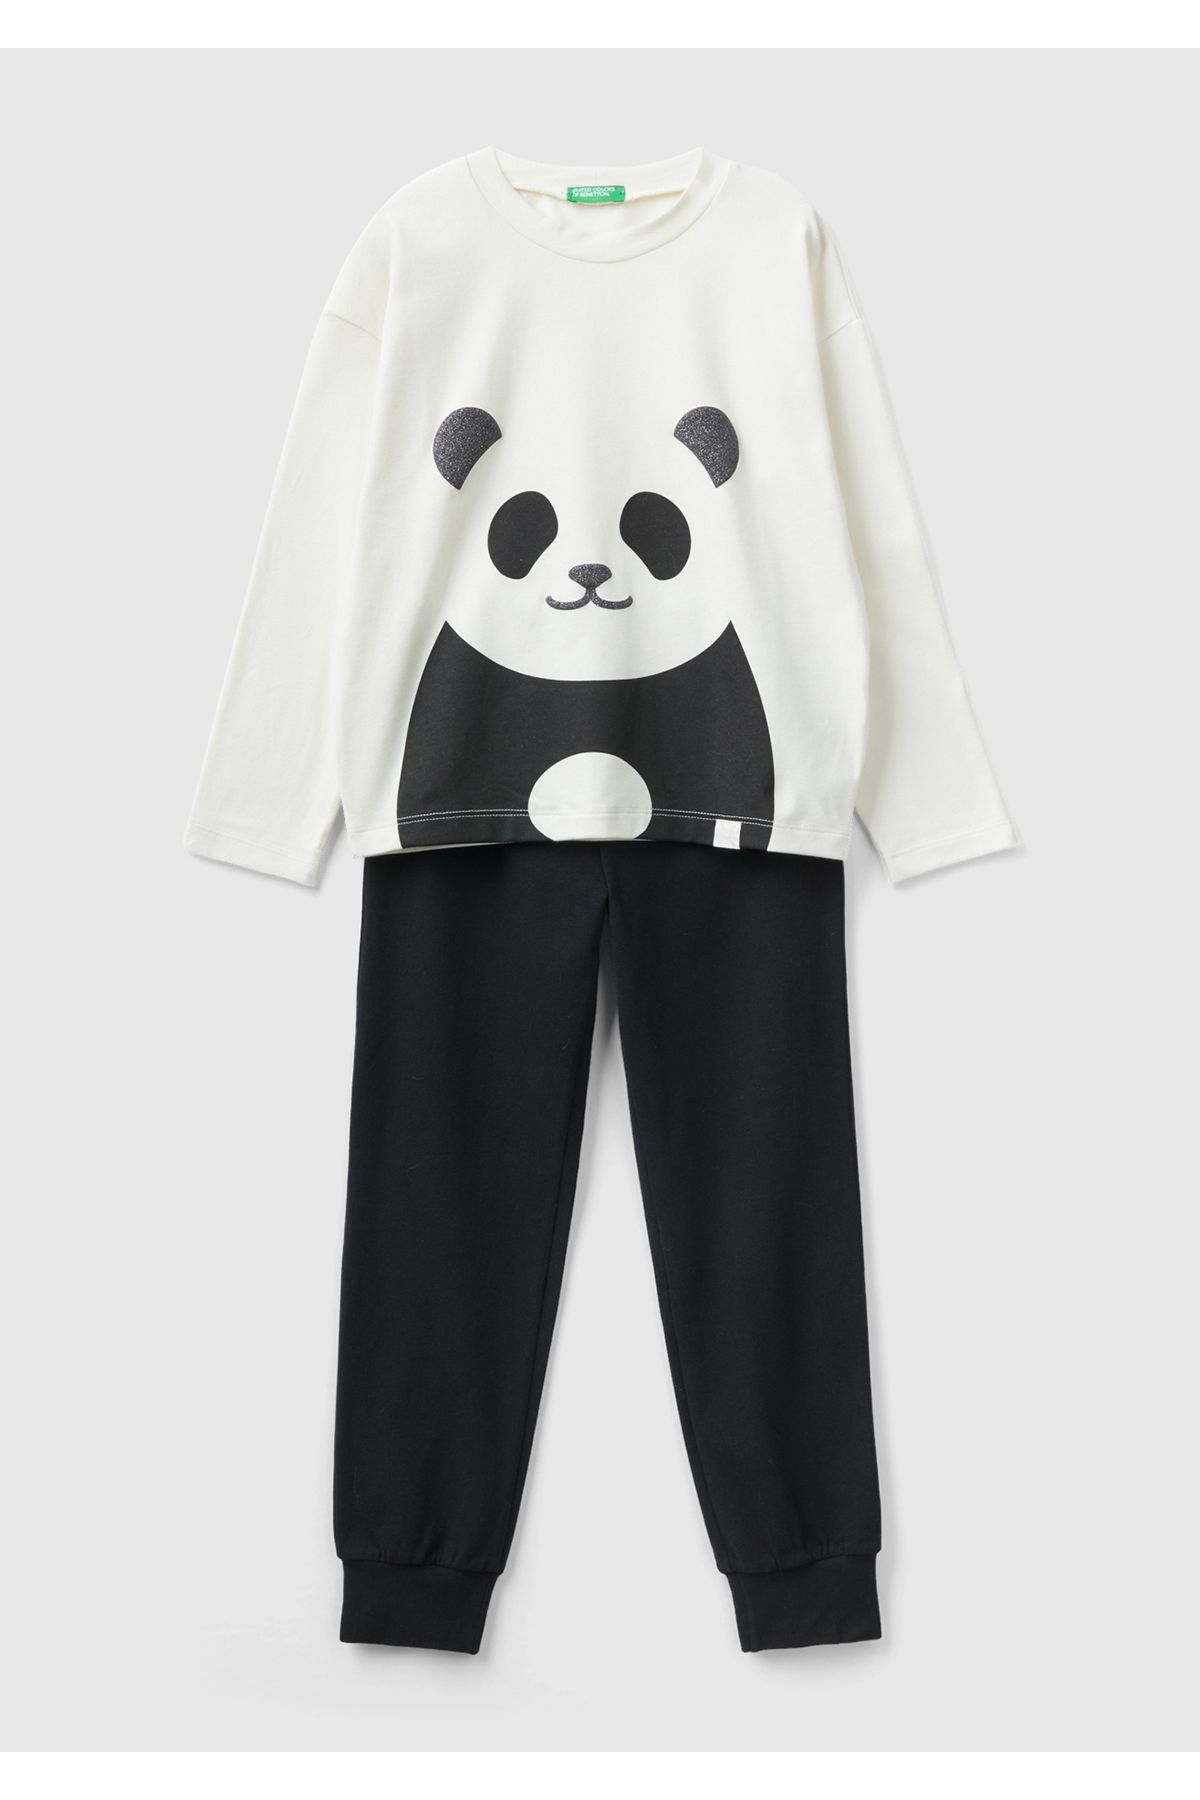 United Colors of Benetton Kız Çocuk Siyah-Beyaz Panda Desenli Pijama Takımı